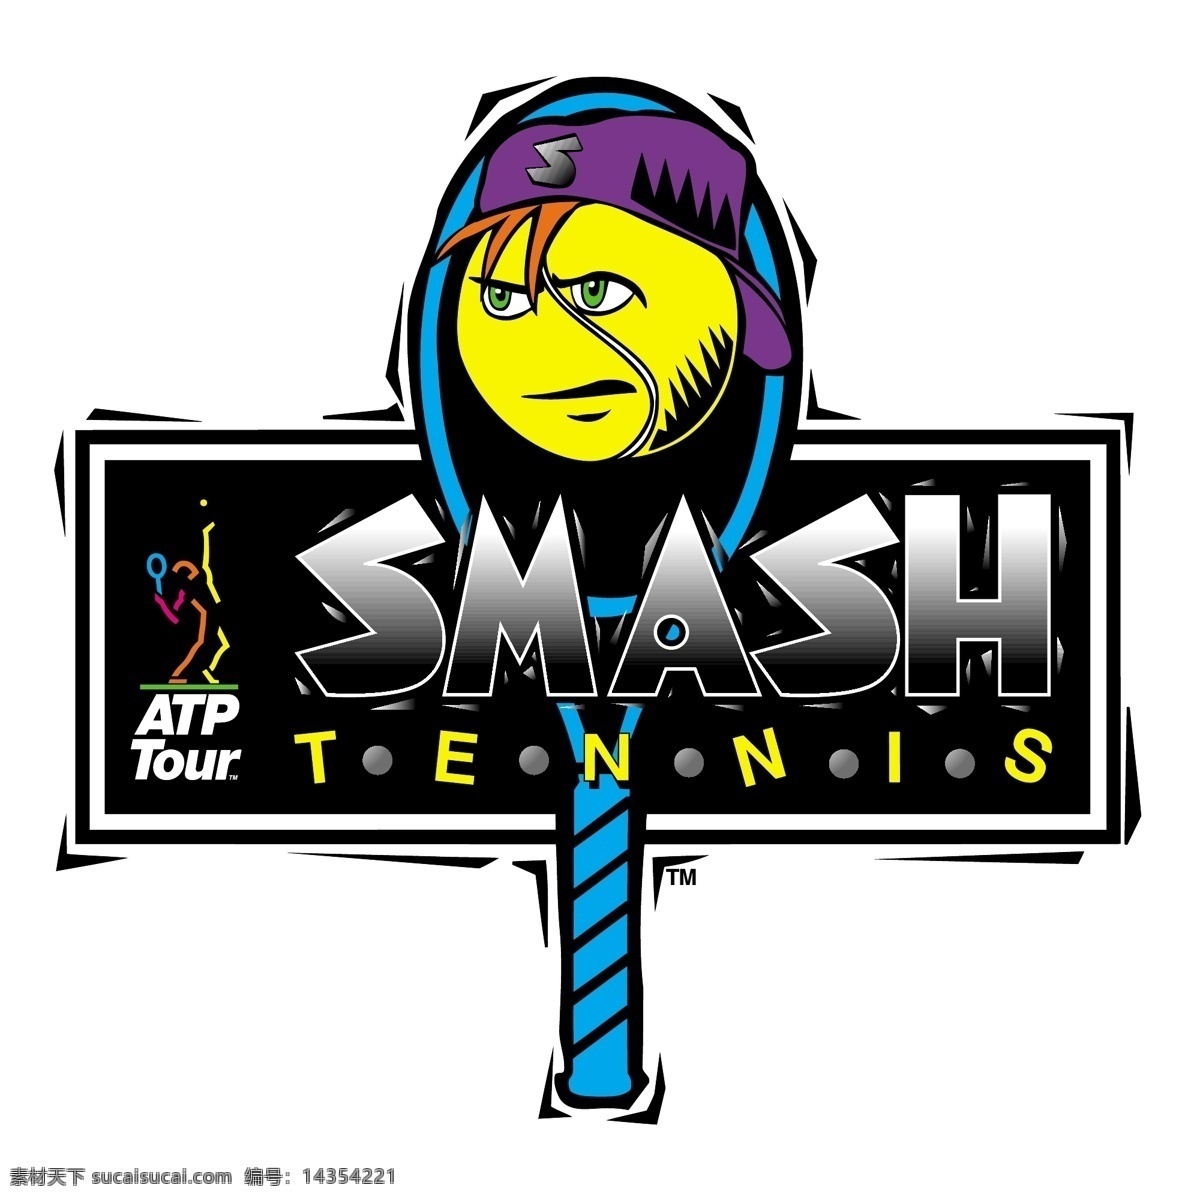 扣杀 网球 免费 标志 标识 psd源文件 logo设计